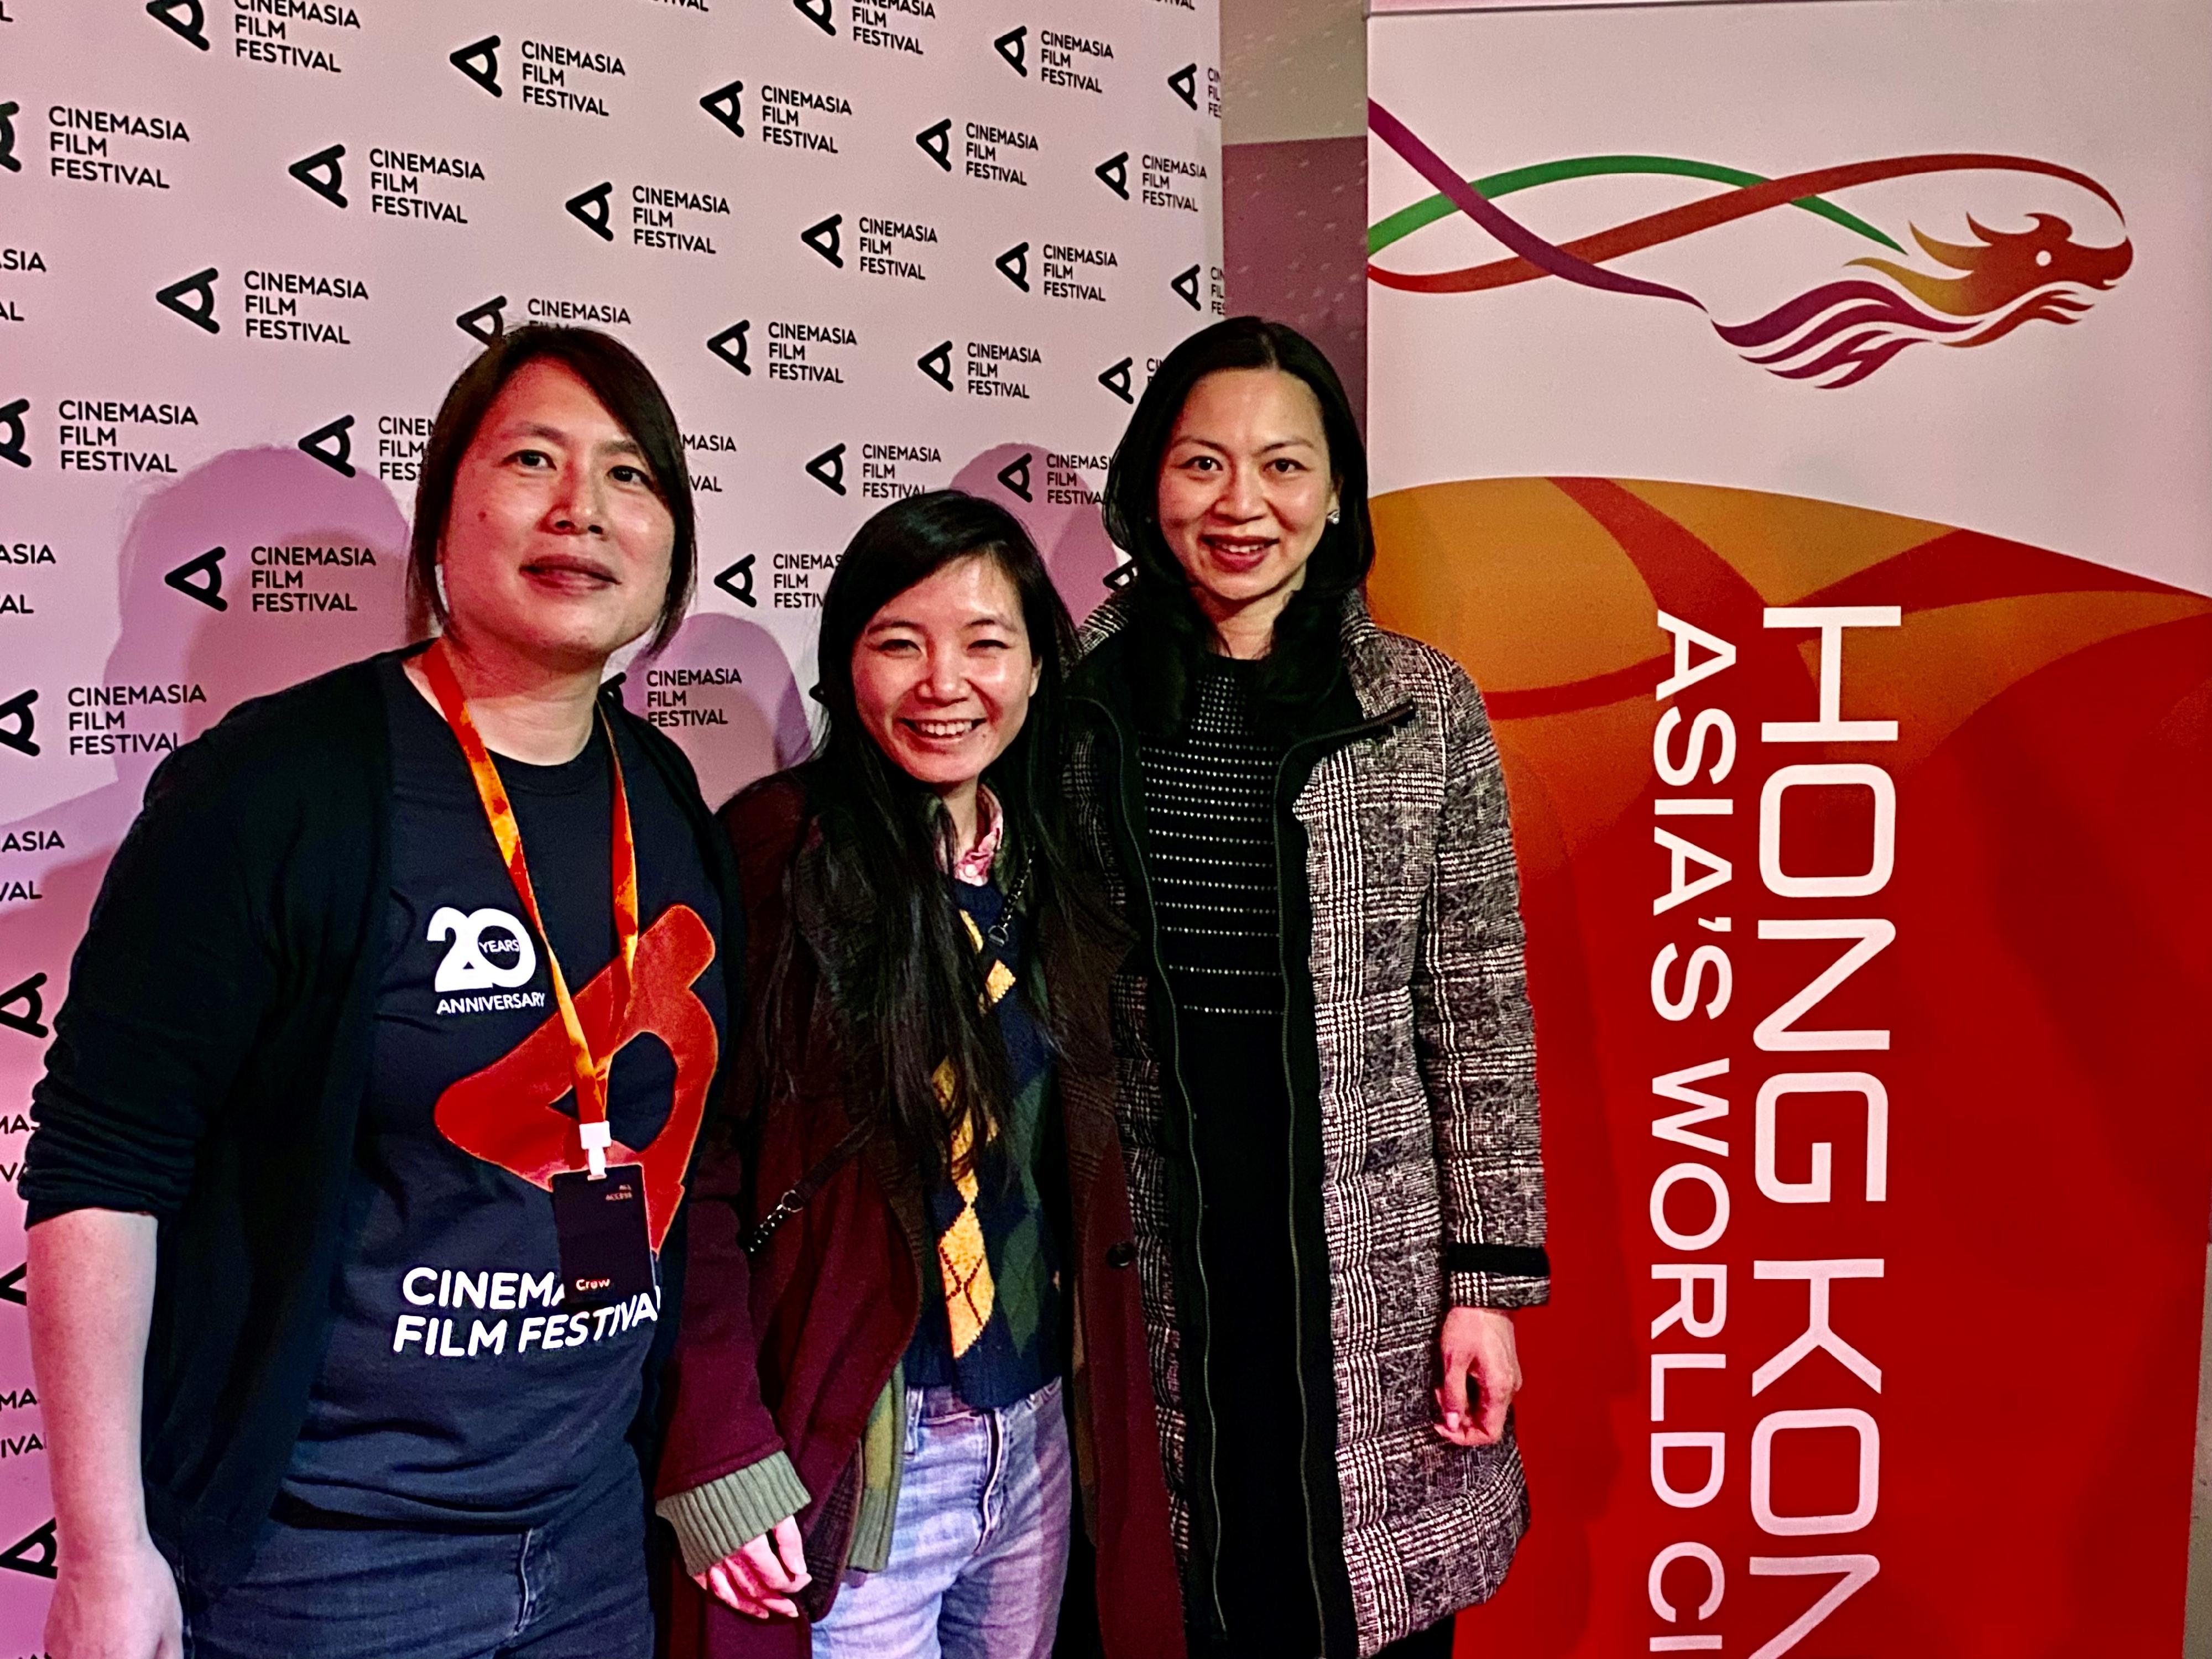 香港驻布鲁塞尔经济贸易办事处副代表李咏璇（右）、香港年青电影人赖恩慈（中）与亚洲电影节执行董事杨文颖（左）三月九日于荷兰阿姆斯特丹举行的香港电影之夜招待会上合照。